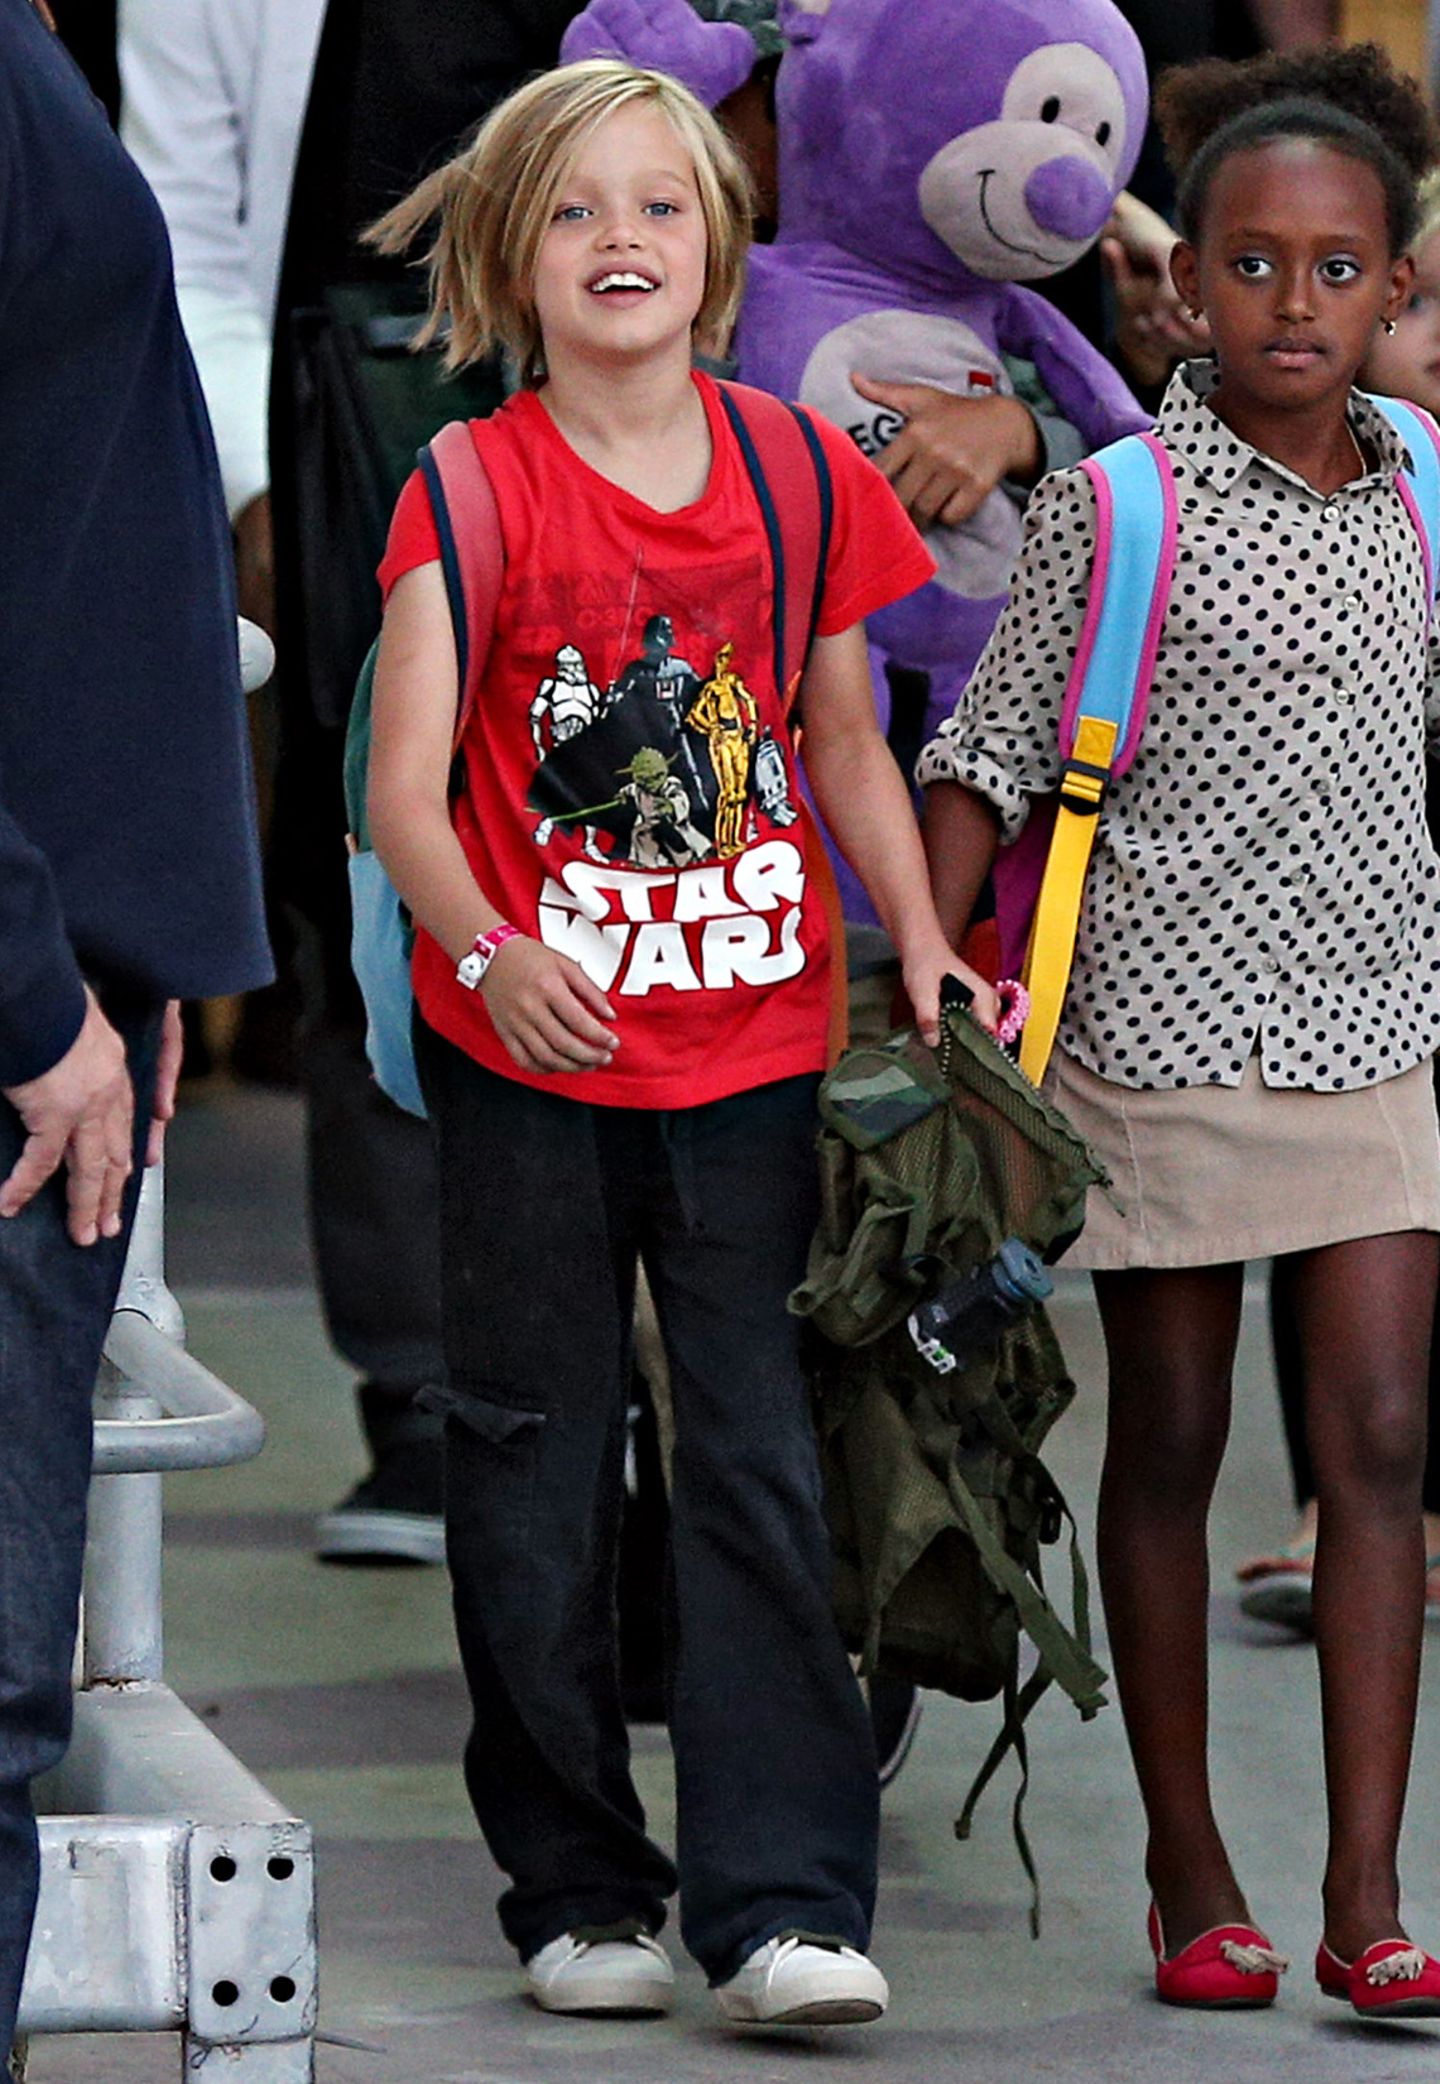 Alle lieben "Star Wars": Shiloh Jolie-Pitt zeigt das mit einem leuchtend roten Shirt im Comic-Style.